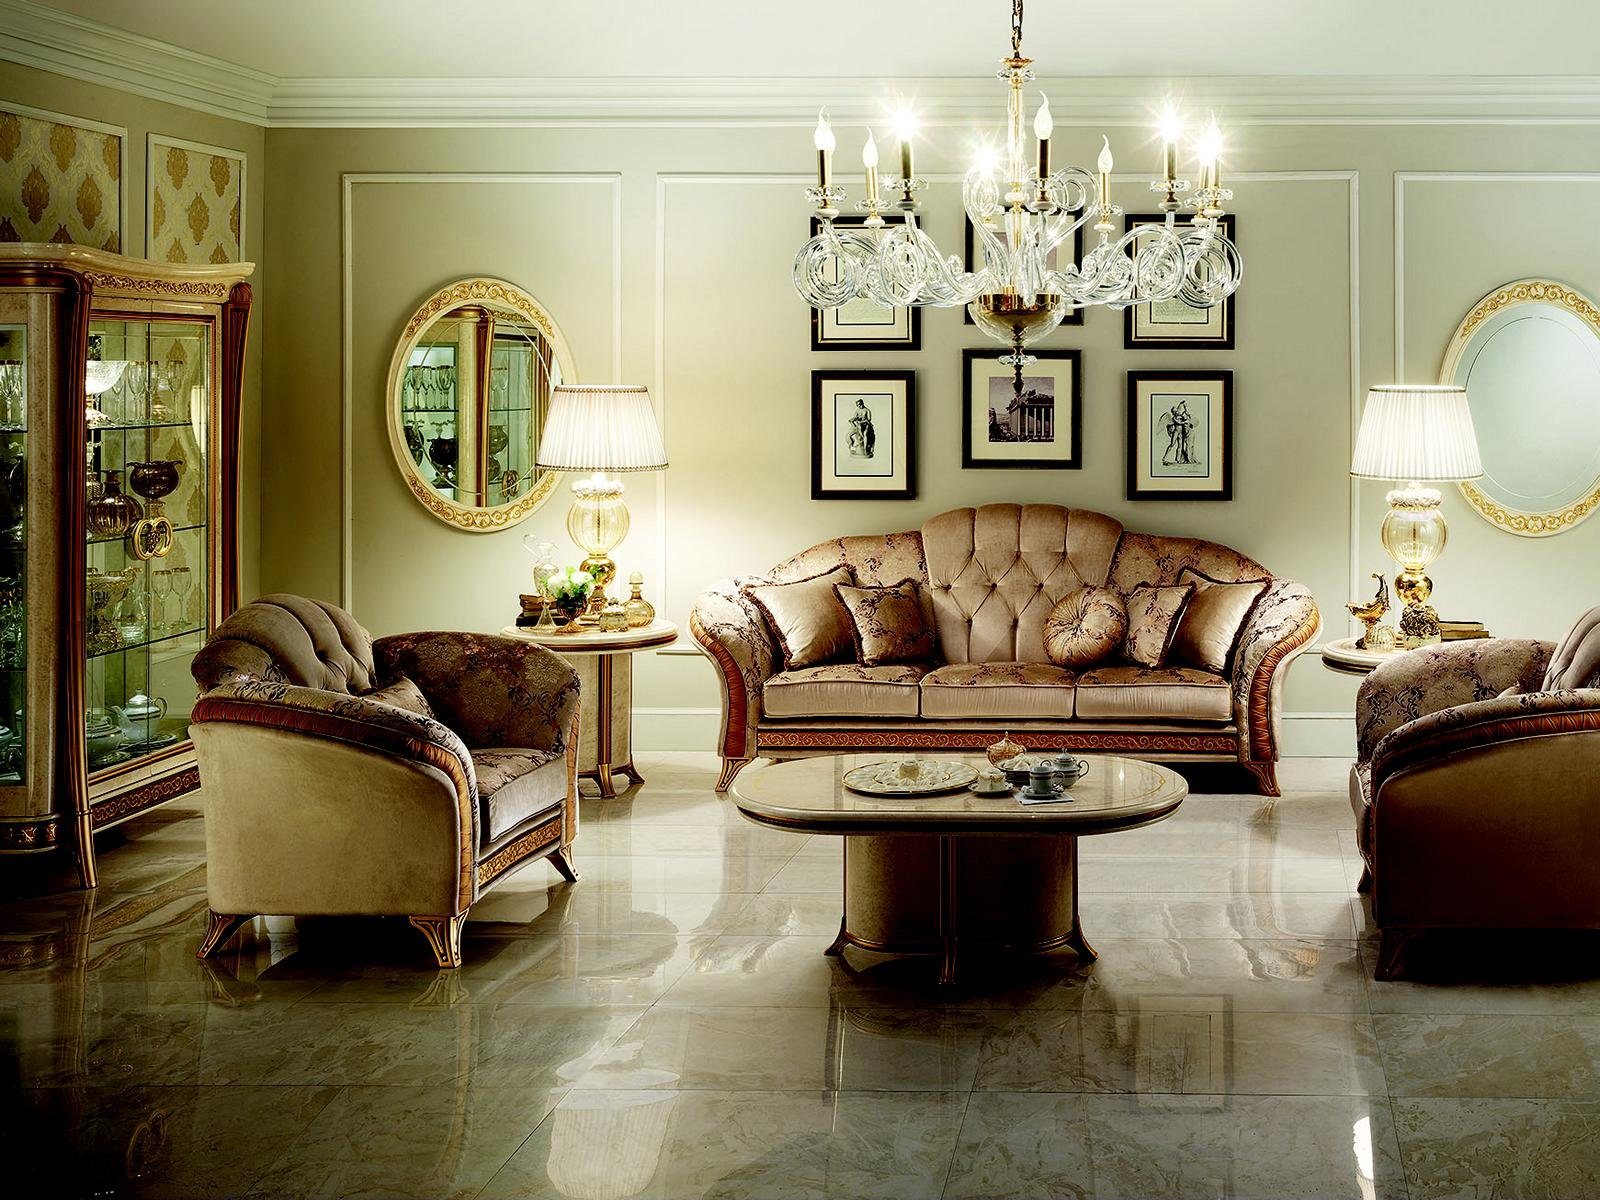 JVmoebel Wohnzimmer-Set, Luxus Klasse 2+1 Italienische Möbel Sofagarnitur Couch Sofa arredoclassic™ Neu